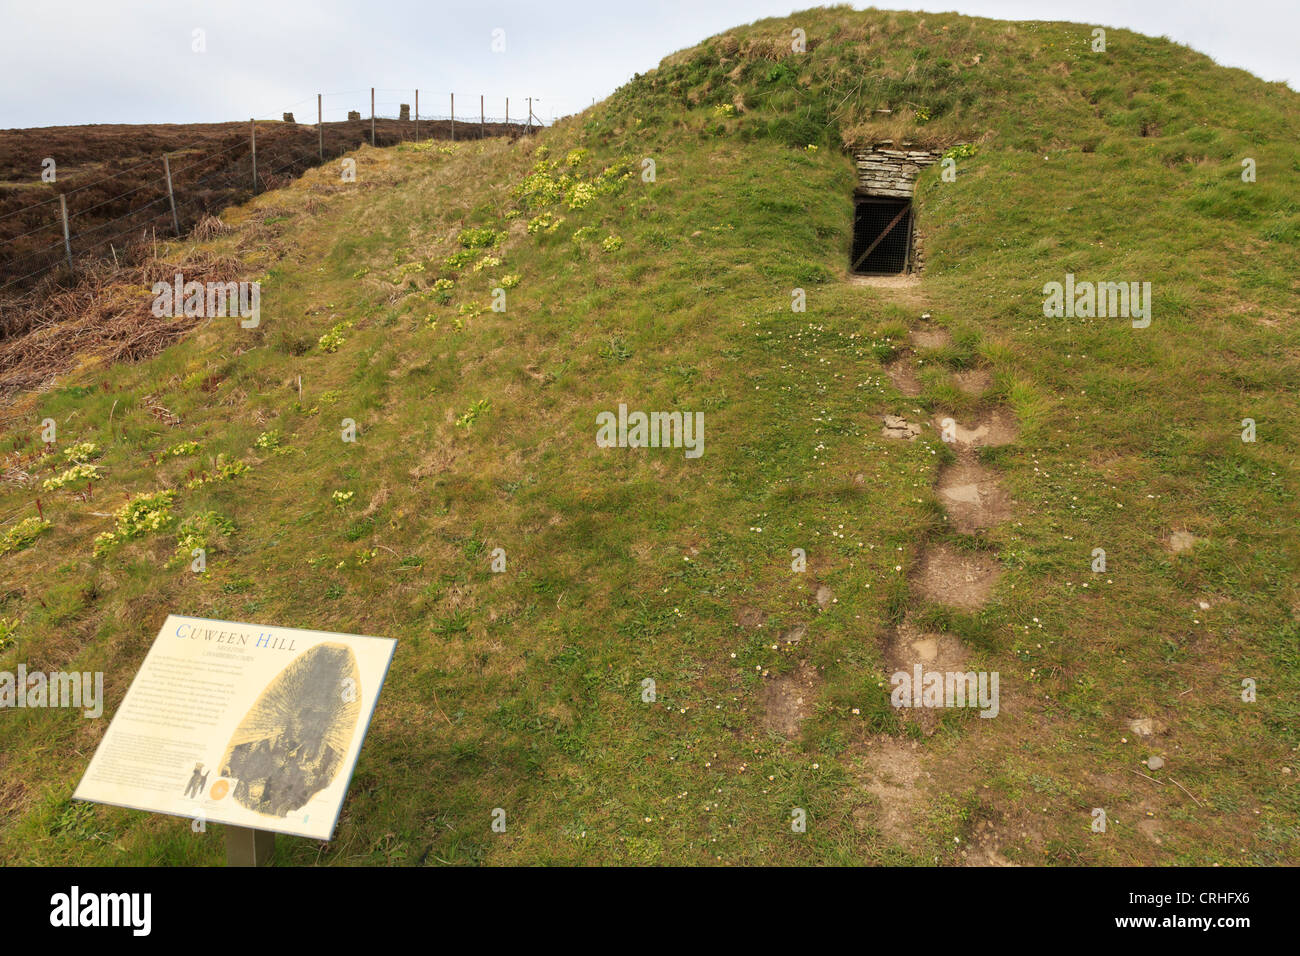 Cuween Kammgehämmert Kairn eine neolithische steinzeitliche Grabkammer oder Grabstätte von etwa 3000BC. Cuween Hill, Finstown, Orkney Mainland, Schottland, Großbritannien Stockfoto